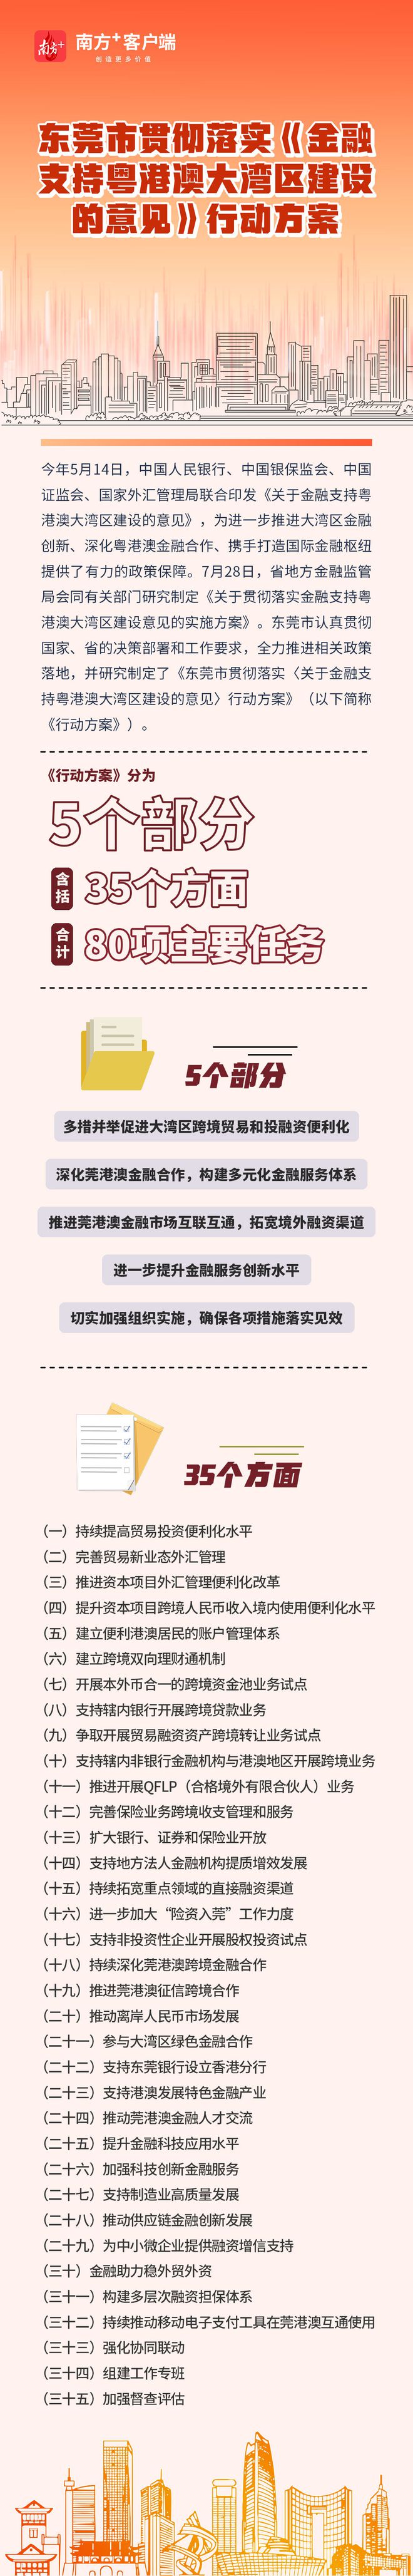 bat365中文官方网站六张海报带你读懂金融支持大湾区建设“施工图”丨“东莞金融(图1)